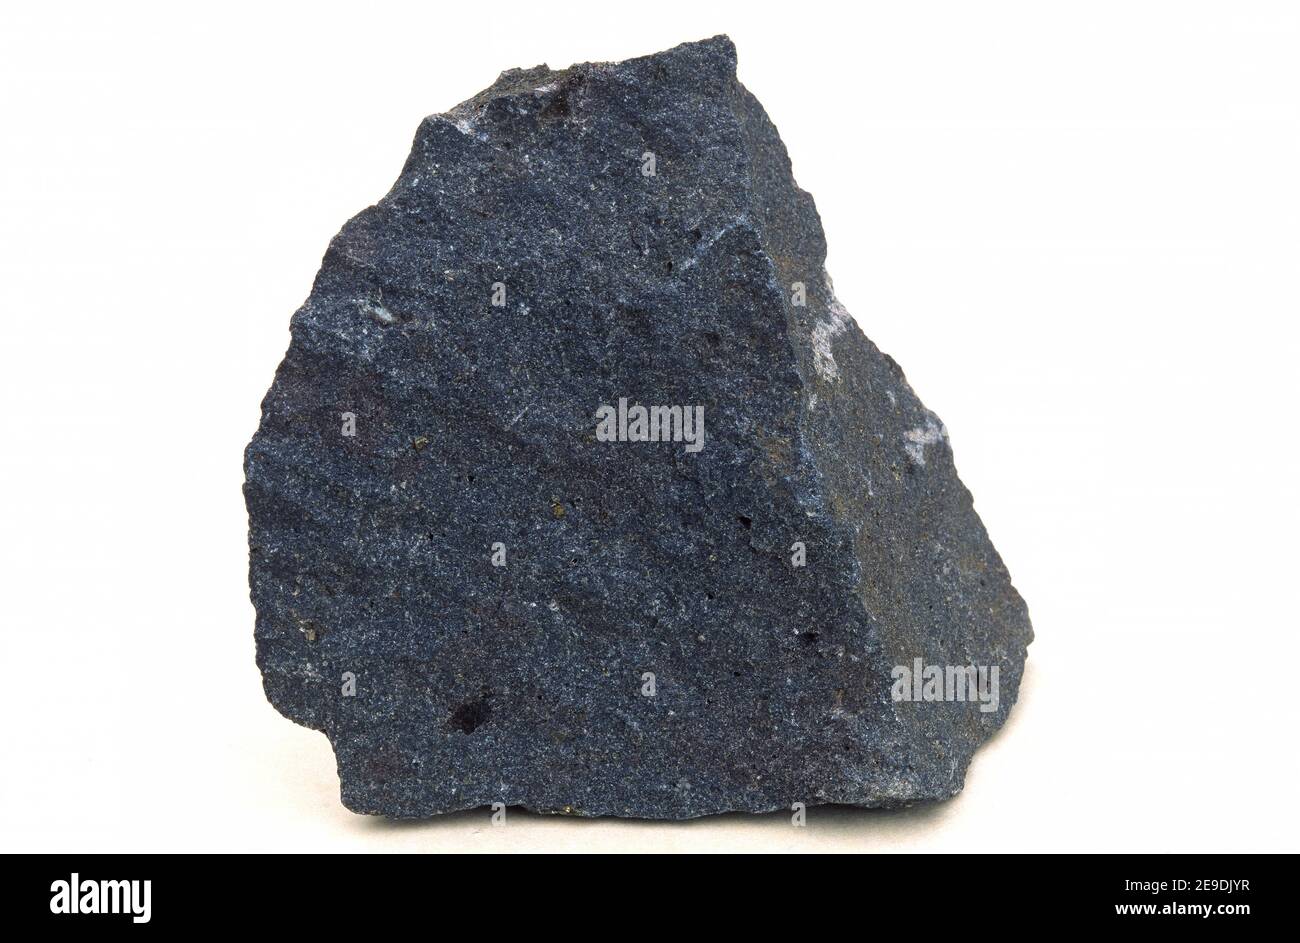 El basalto es una roca volcánica mafic. Foto de stock